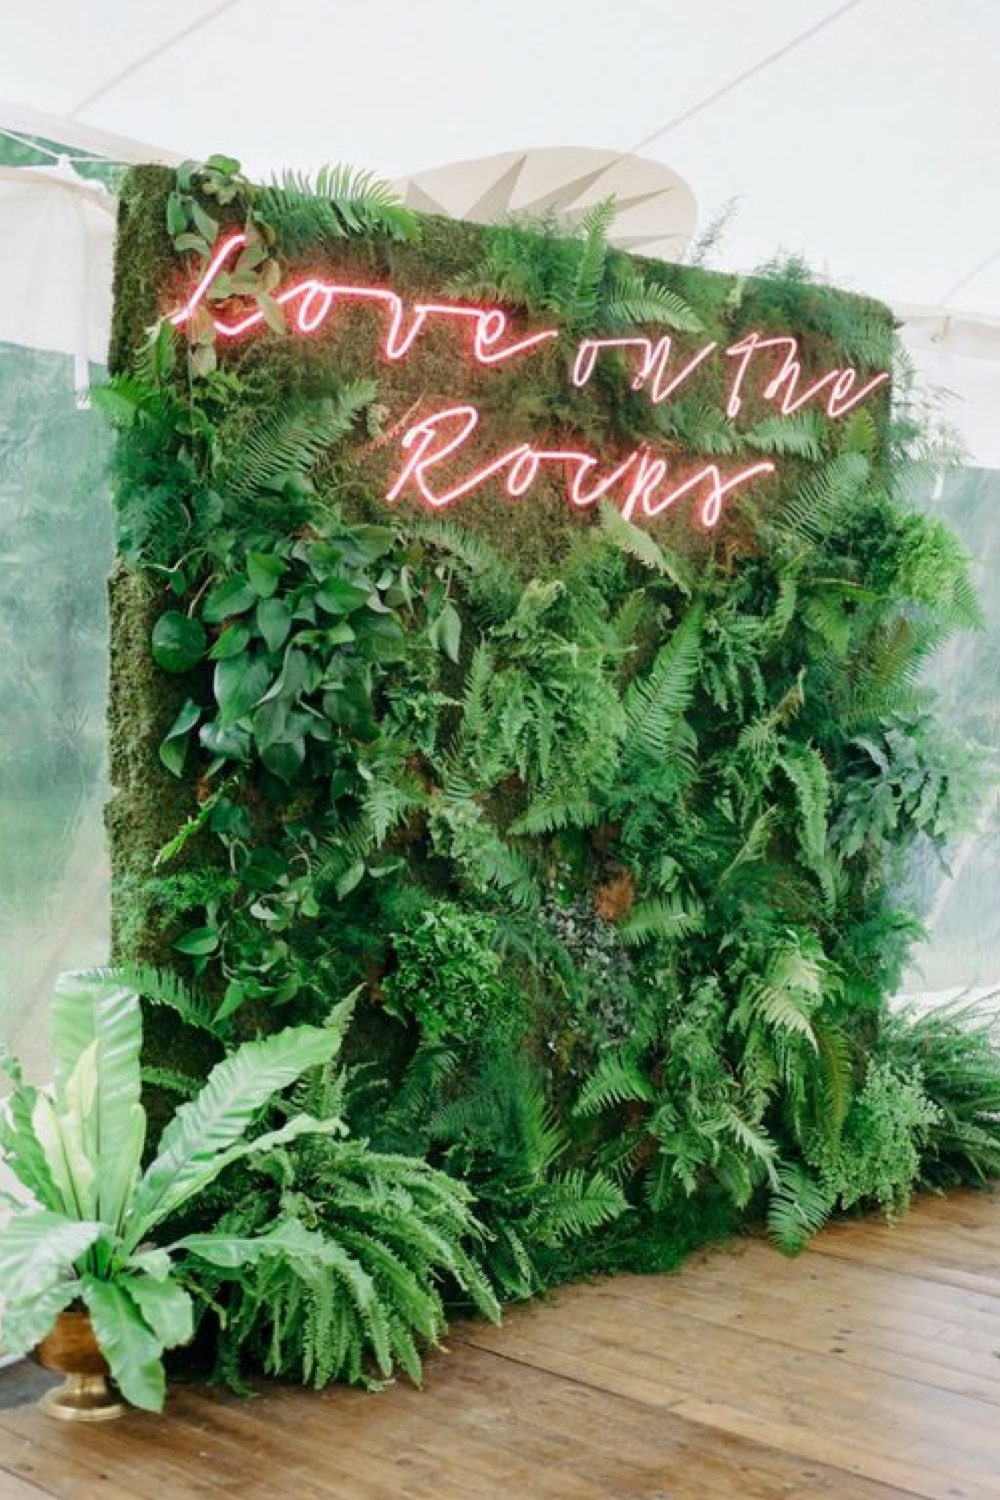 meilleur photobooth mariage décor végétal avec citation néon rose original moderne